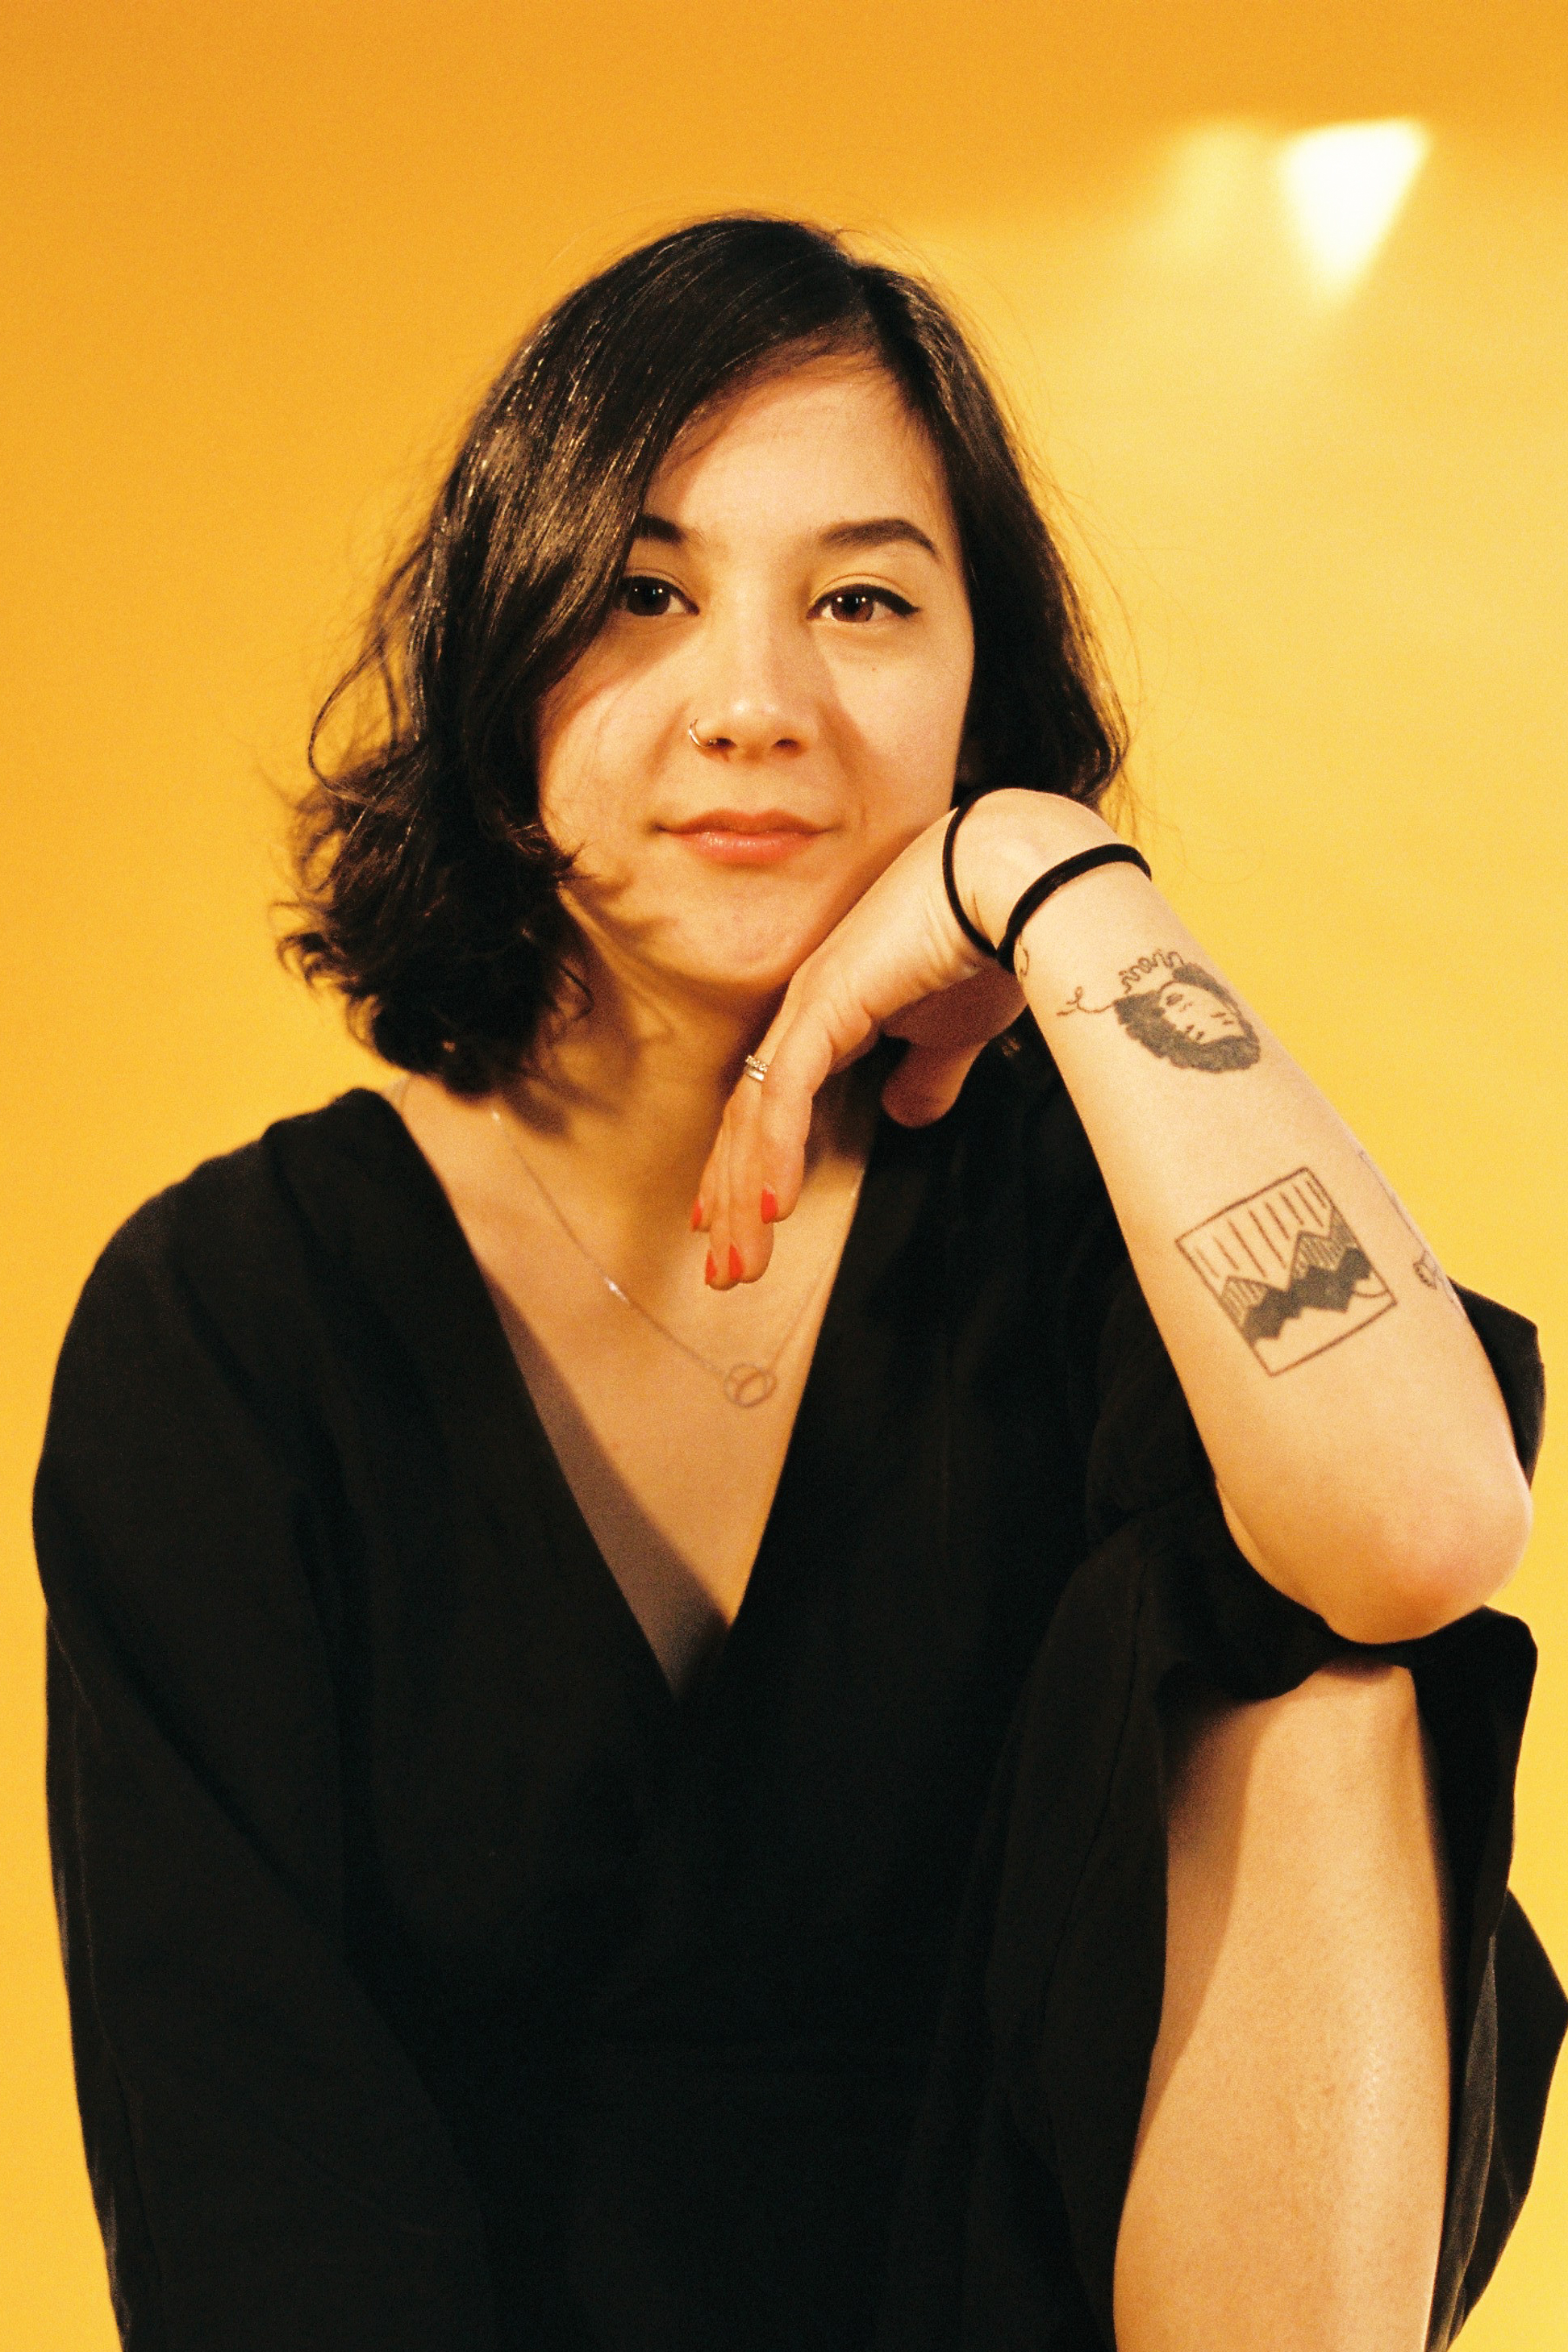 Lead singer of Indie pop band Japanese Breakfast to speak about memoir, experiences